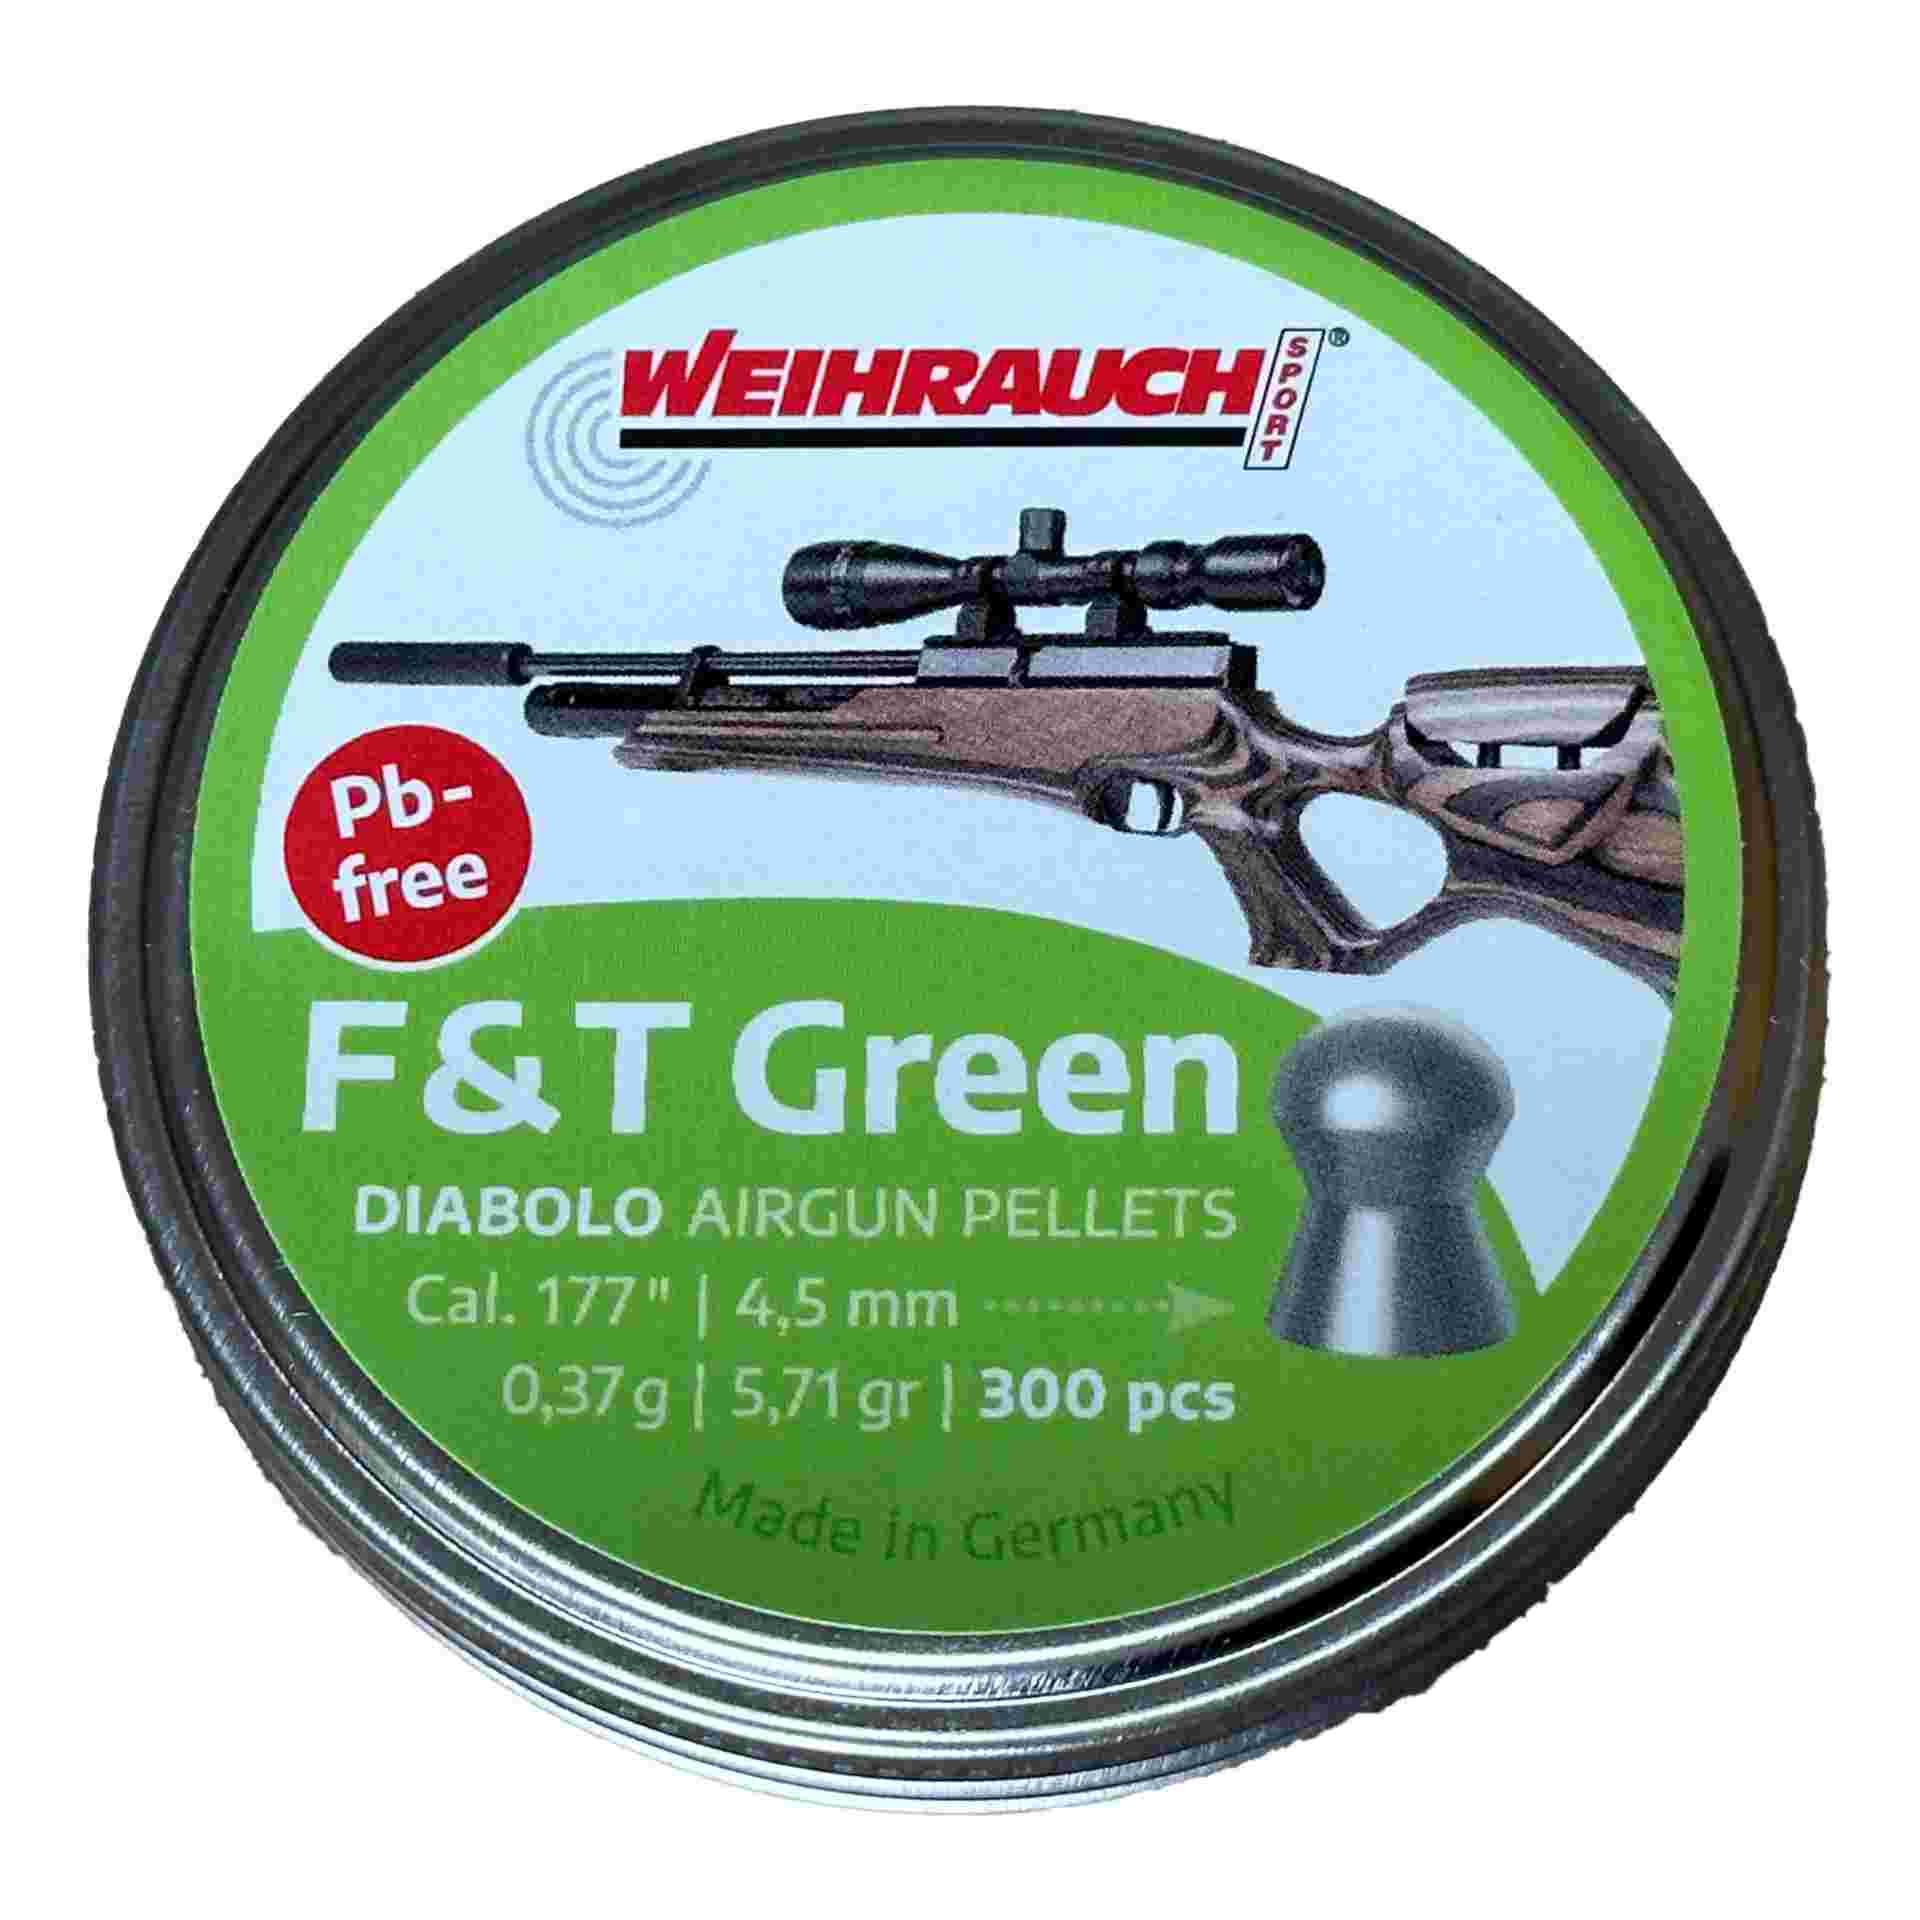 Rundkopf-Diabolos F&T Green 4,5mm, bleifrei, 300 Stück